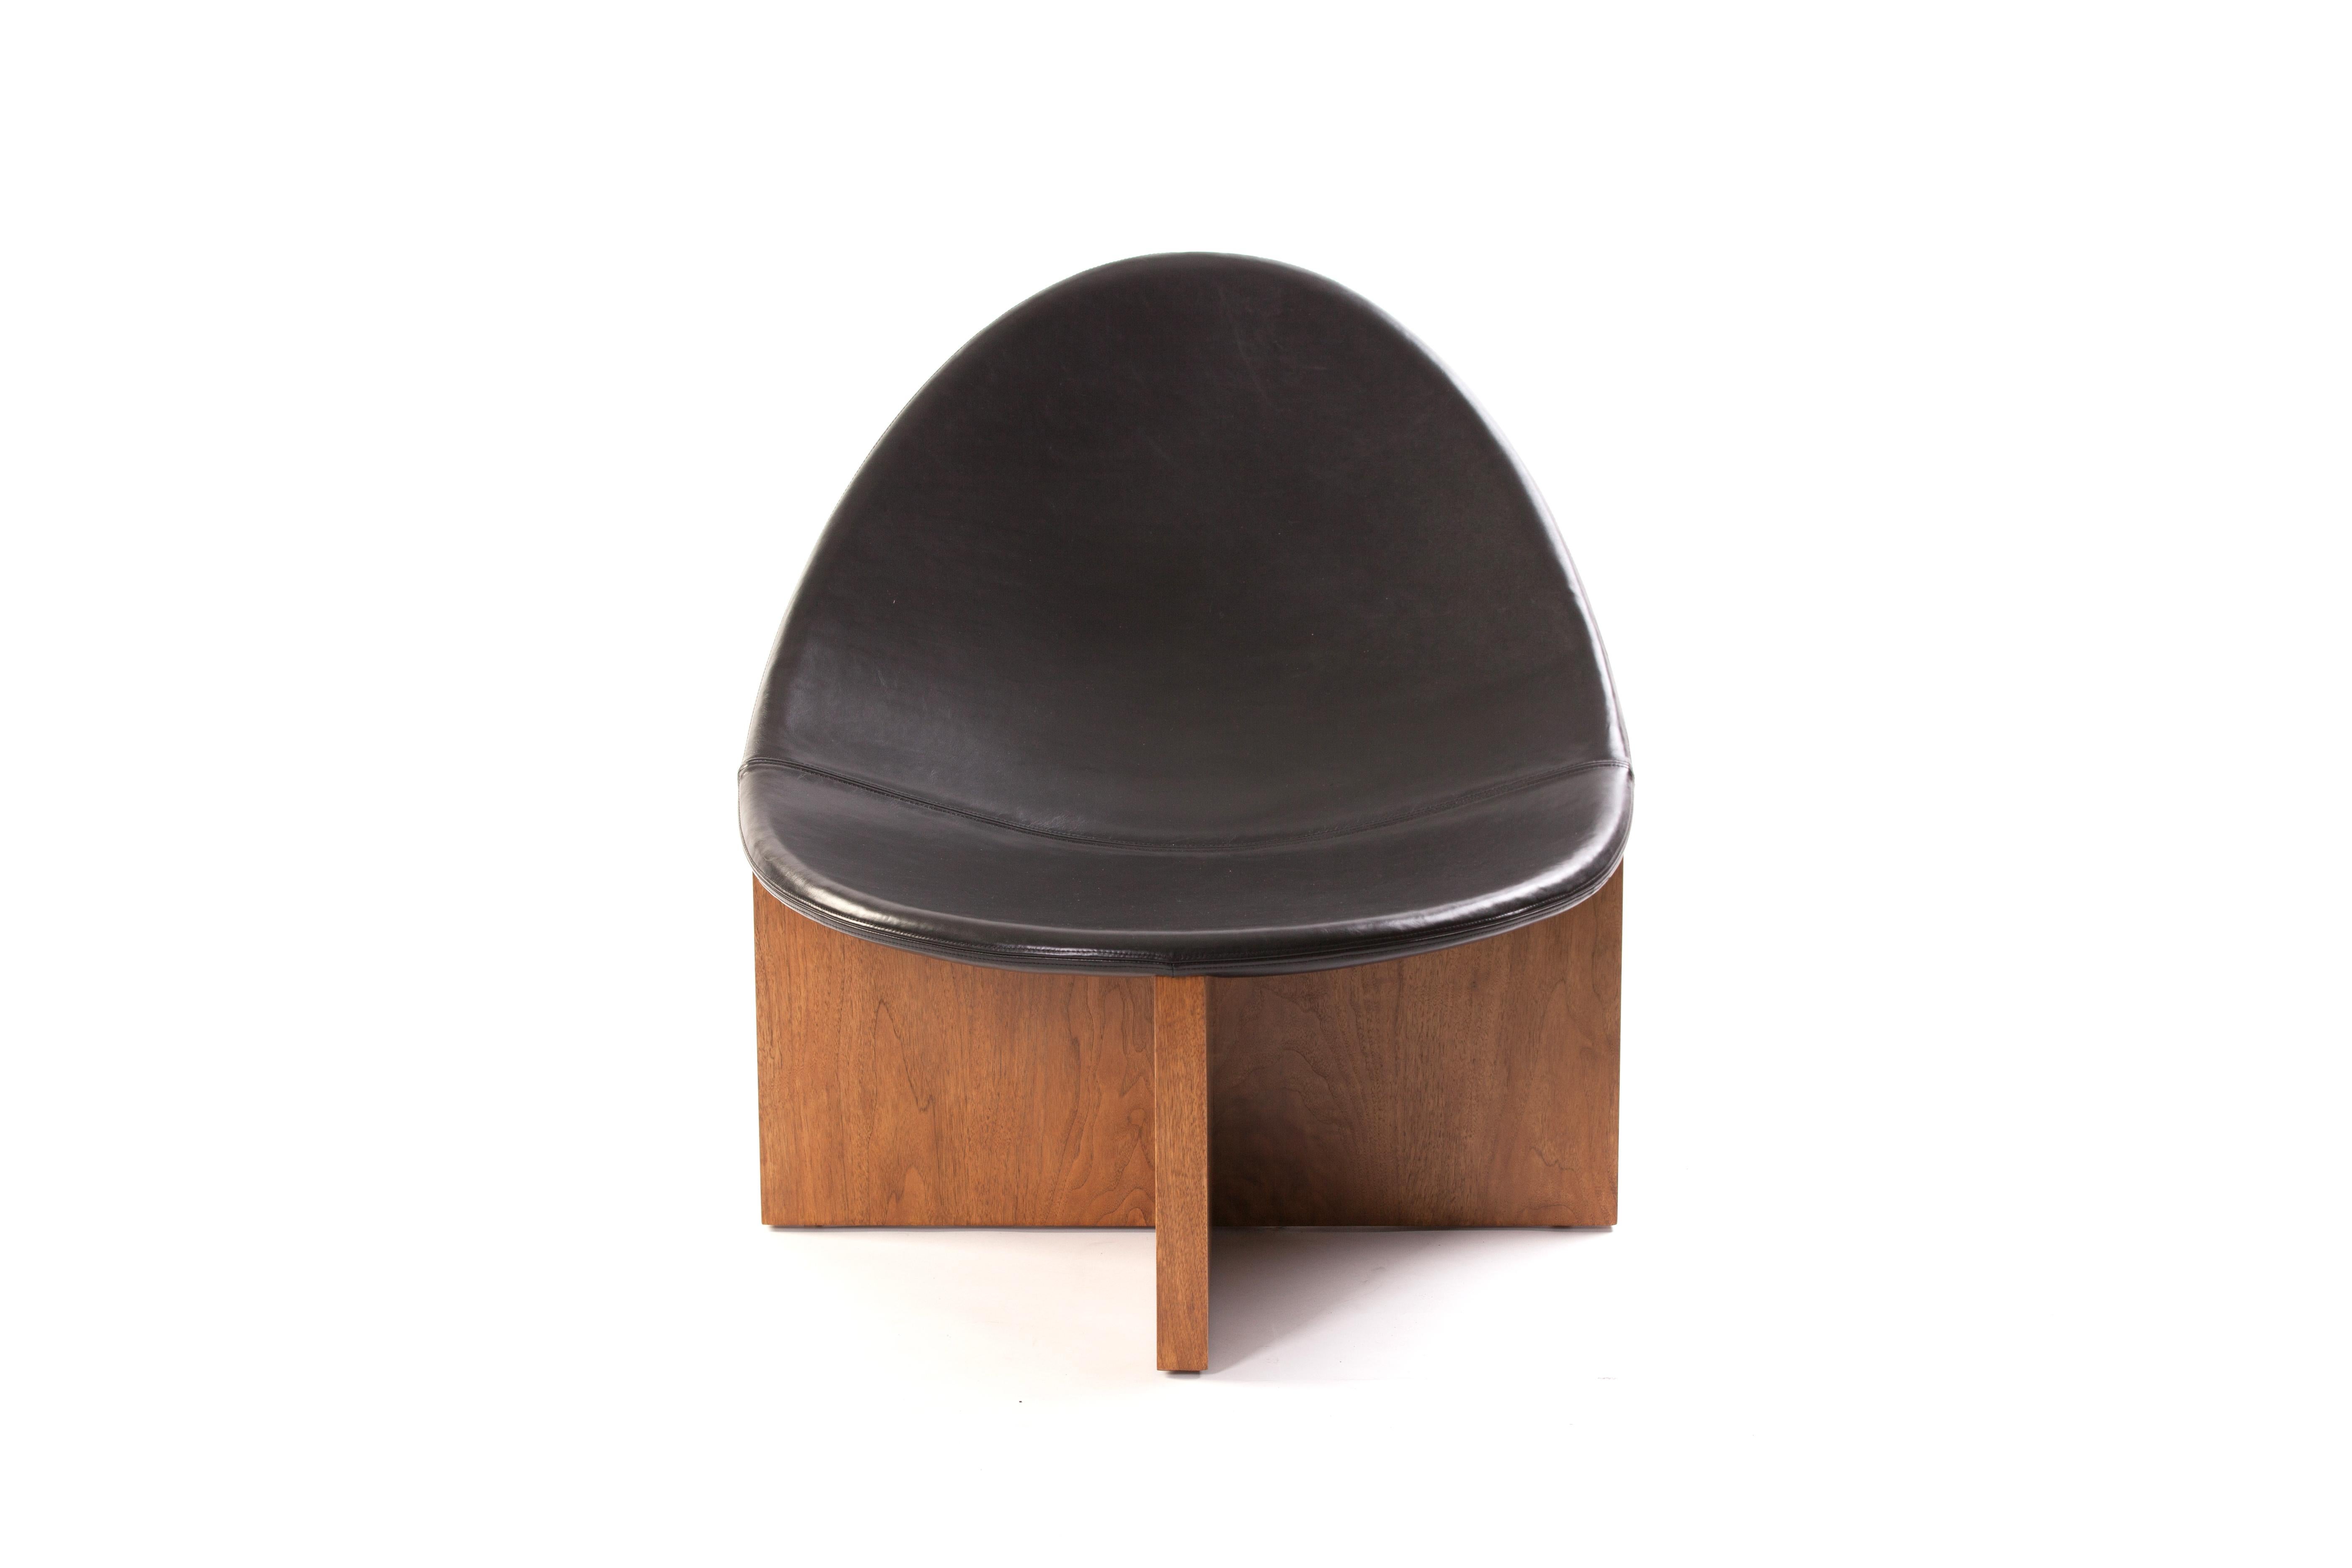 Der Sessel Nido mit Gestell aus massivem Nussbaumholz und gepolstertem Sitz aus schwarzem Leder ist das Ergebnis eines Spiels mit der Gegenüberstellung von Formen. Die eiförmige Form des ledergepolsterten Holzsitzes, der sich in den kreuzförmigen